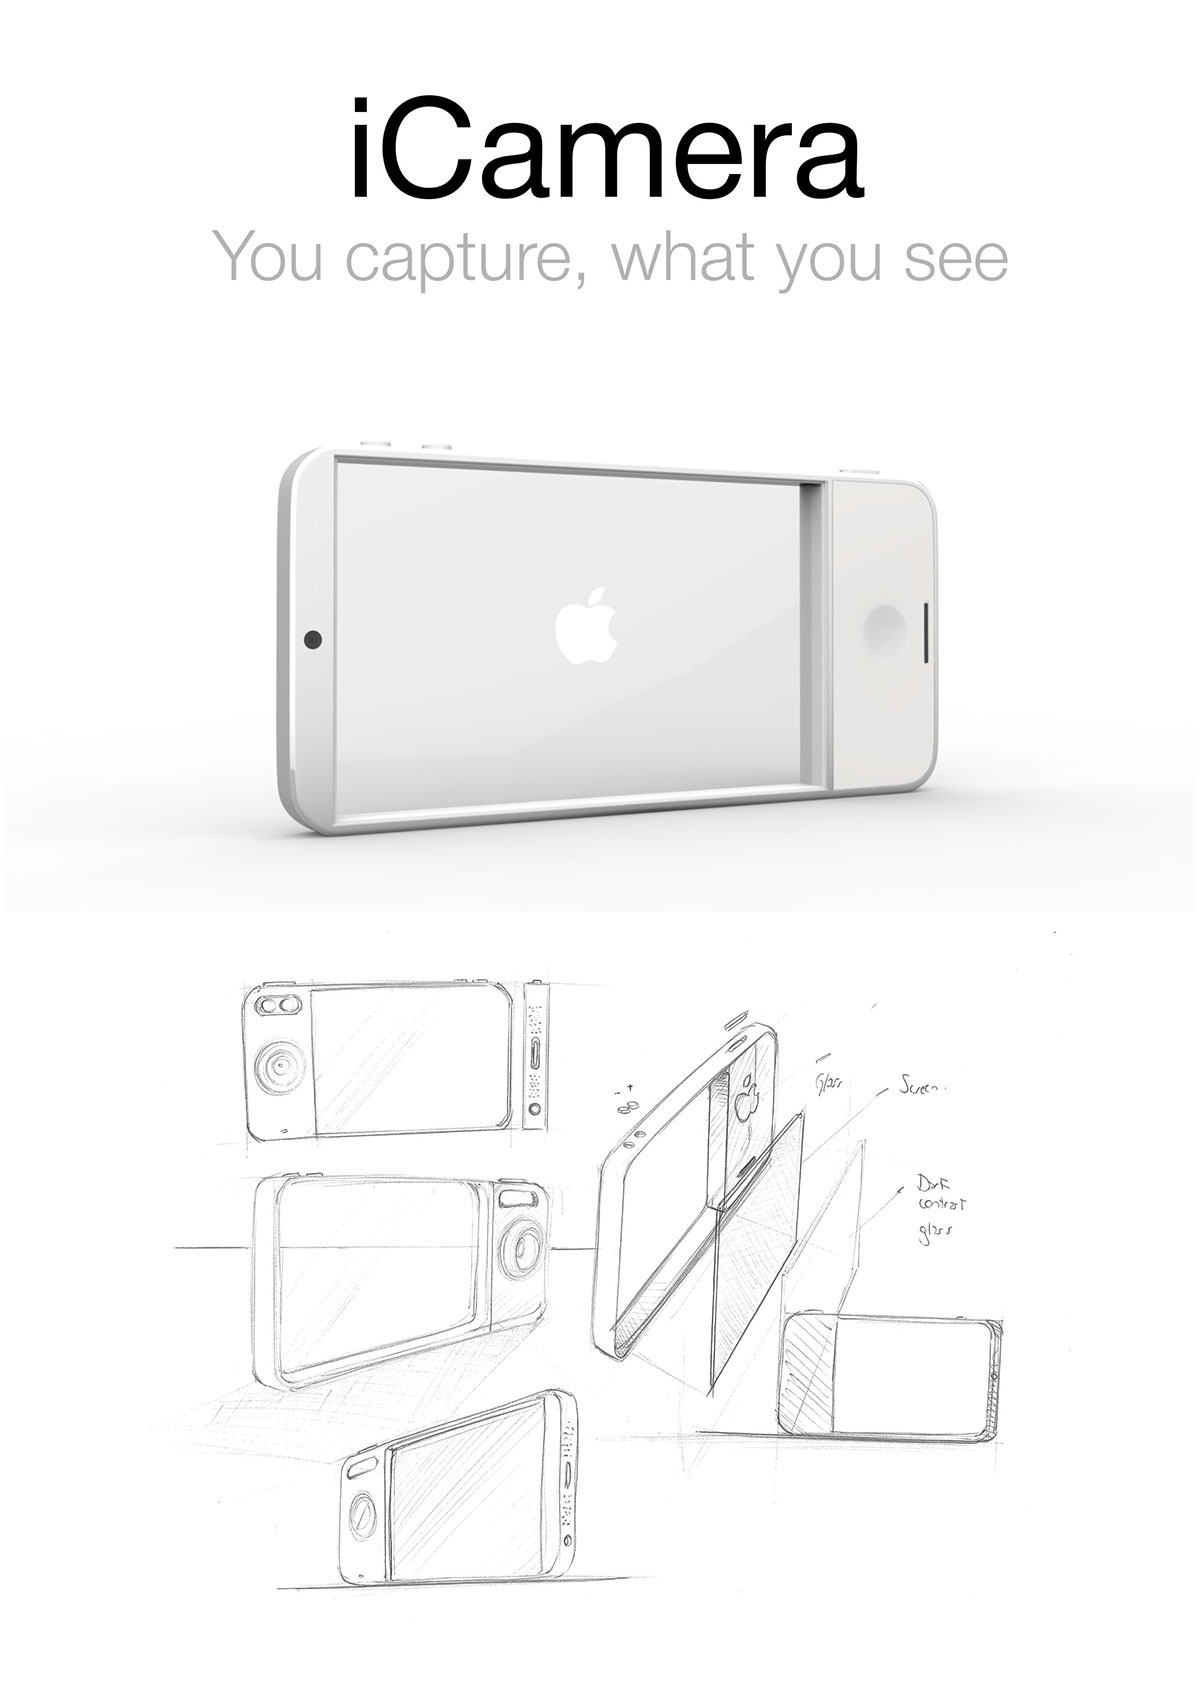 apple icamera SmartCamera idevice ConceptCamera